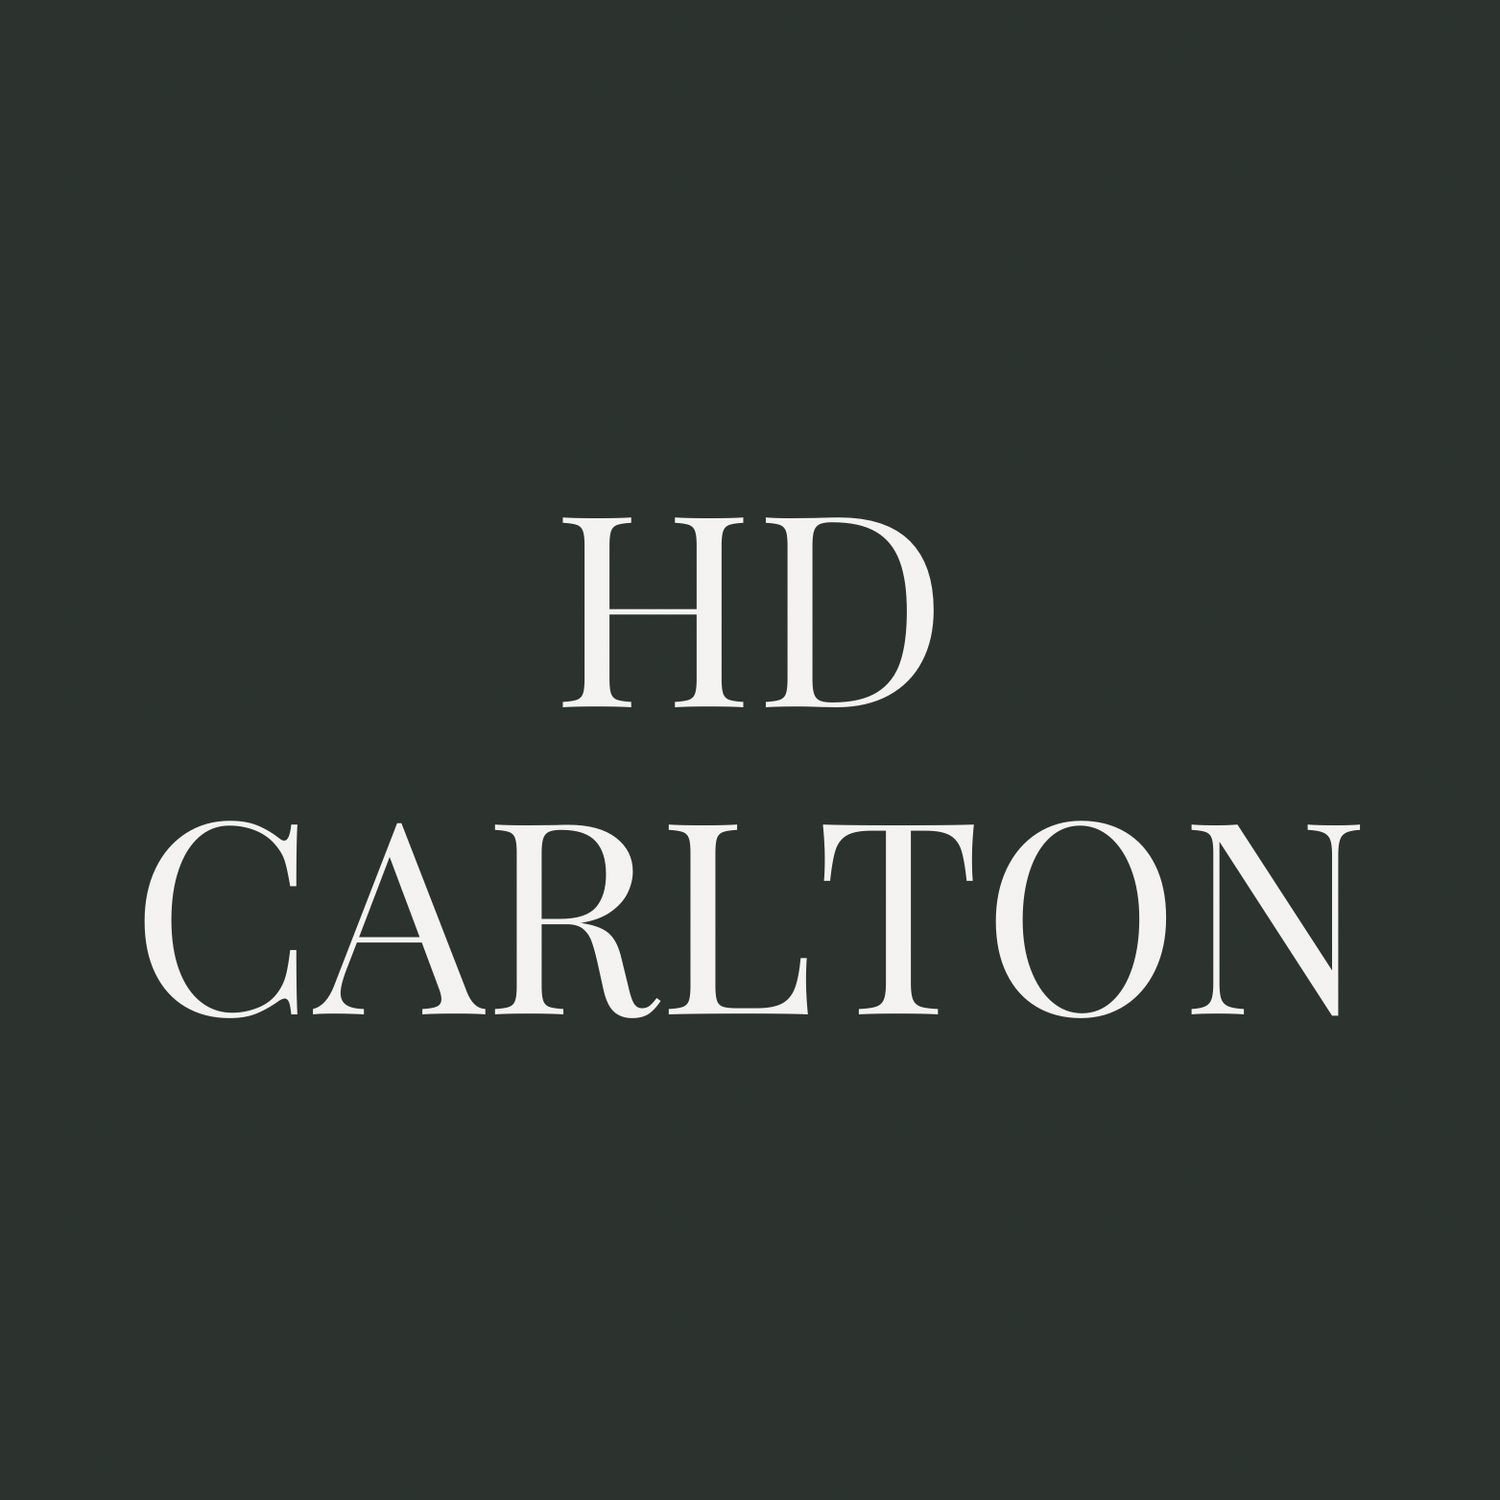 H.D. Carlton